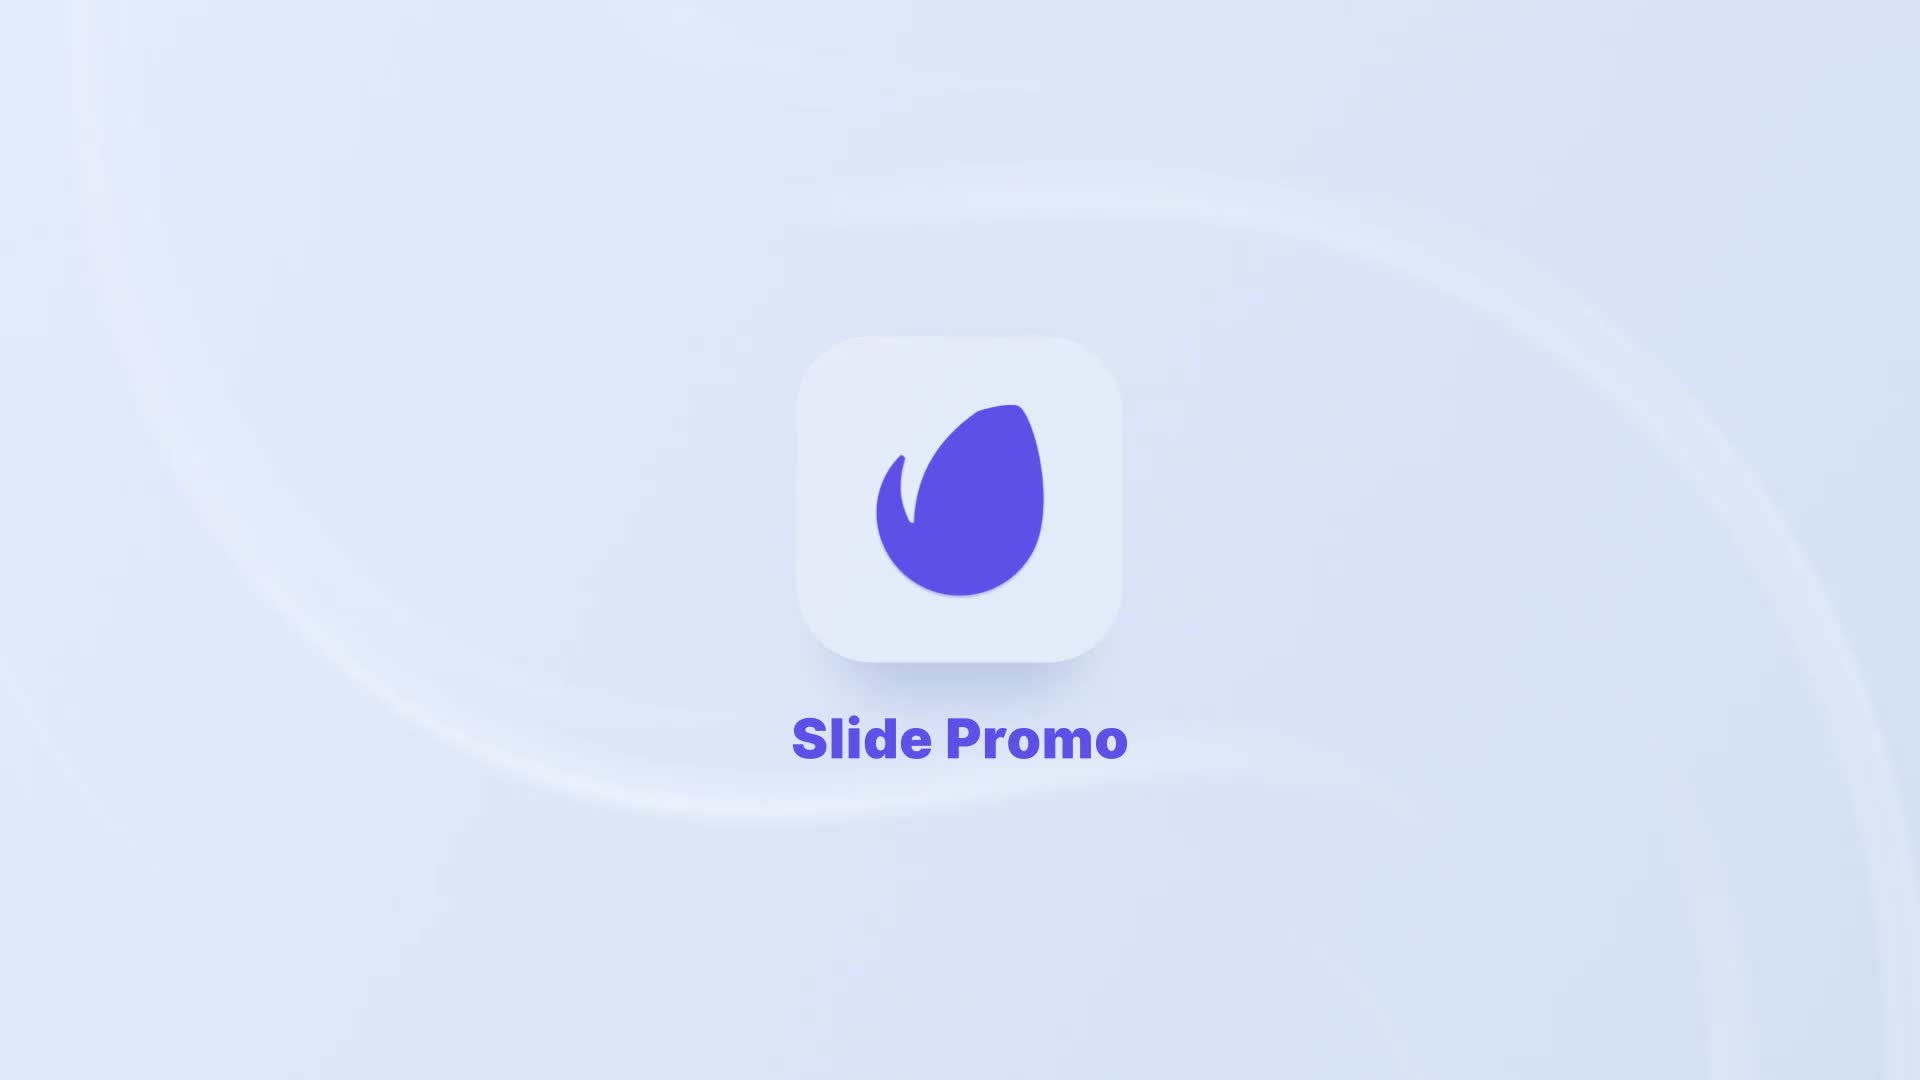 Slide Pro Website Promo Slides Presentation Videohive 30635236 After Effects Image 1